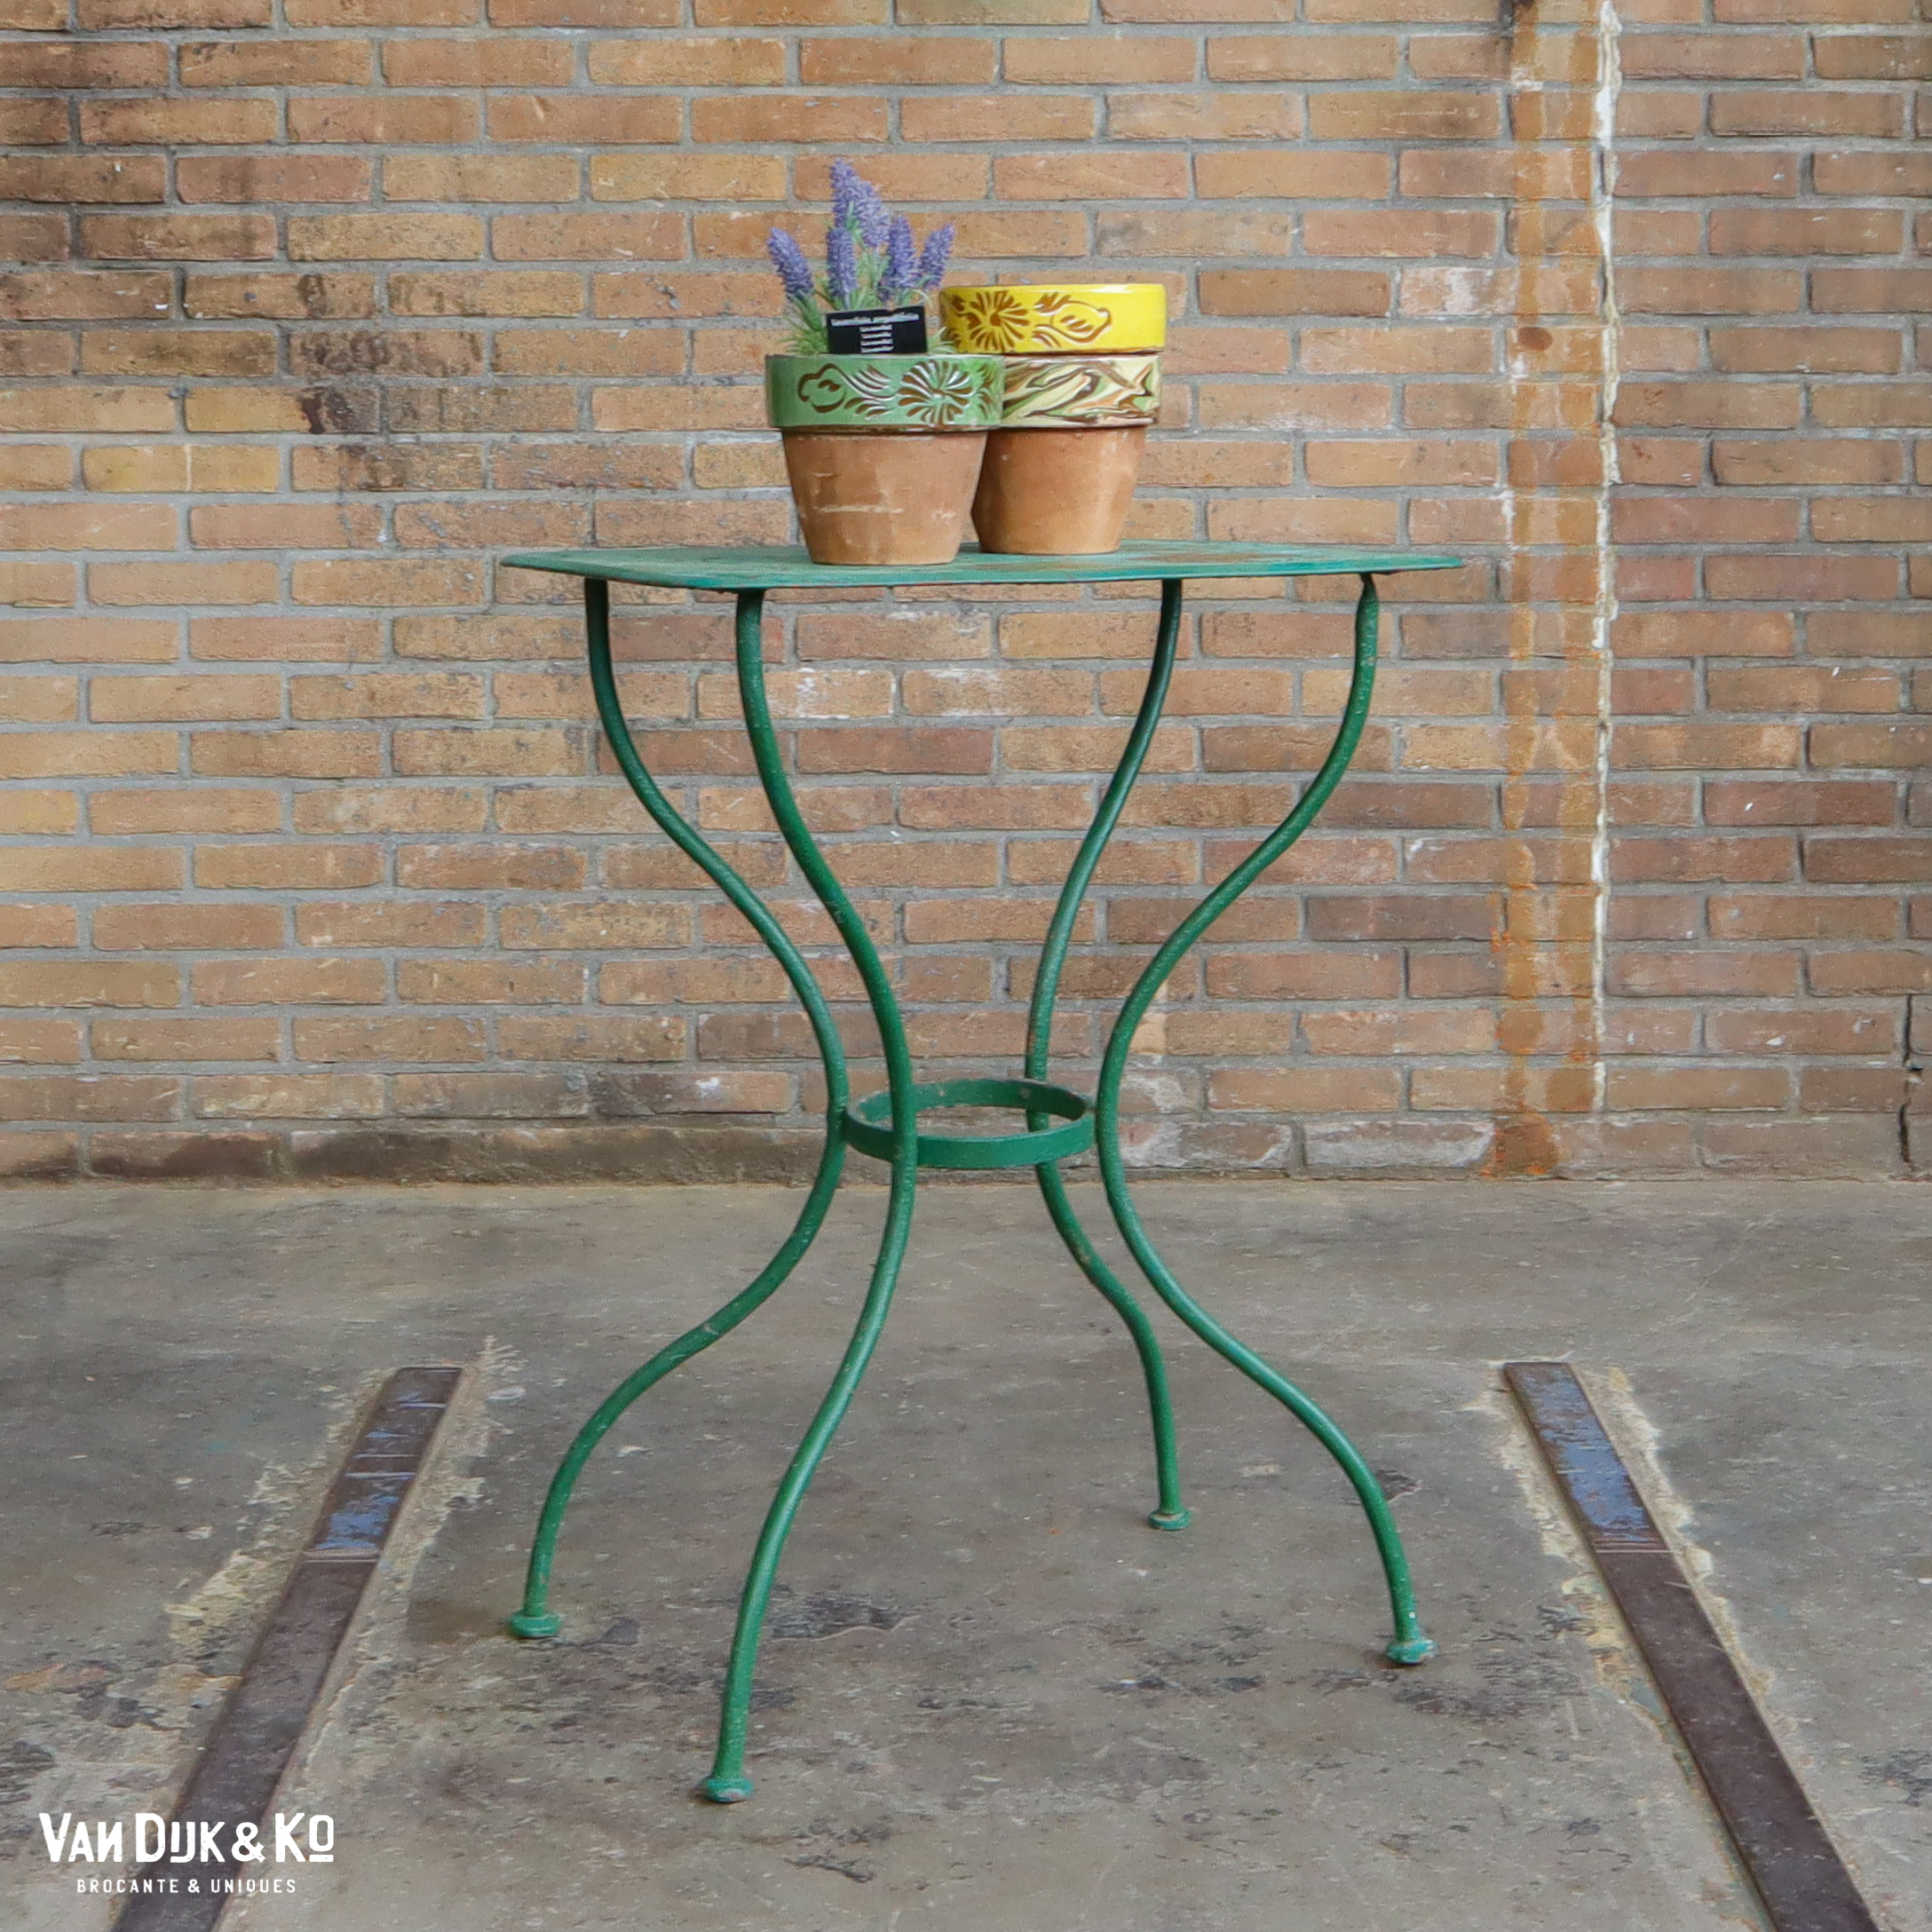 Verzwakken Patriottisch mug Metalen plantentafel » Van Dijk & Ko